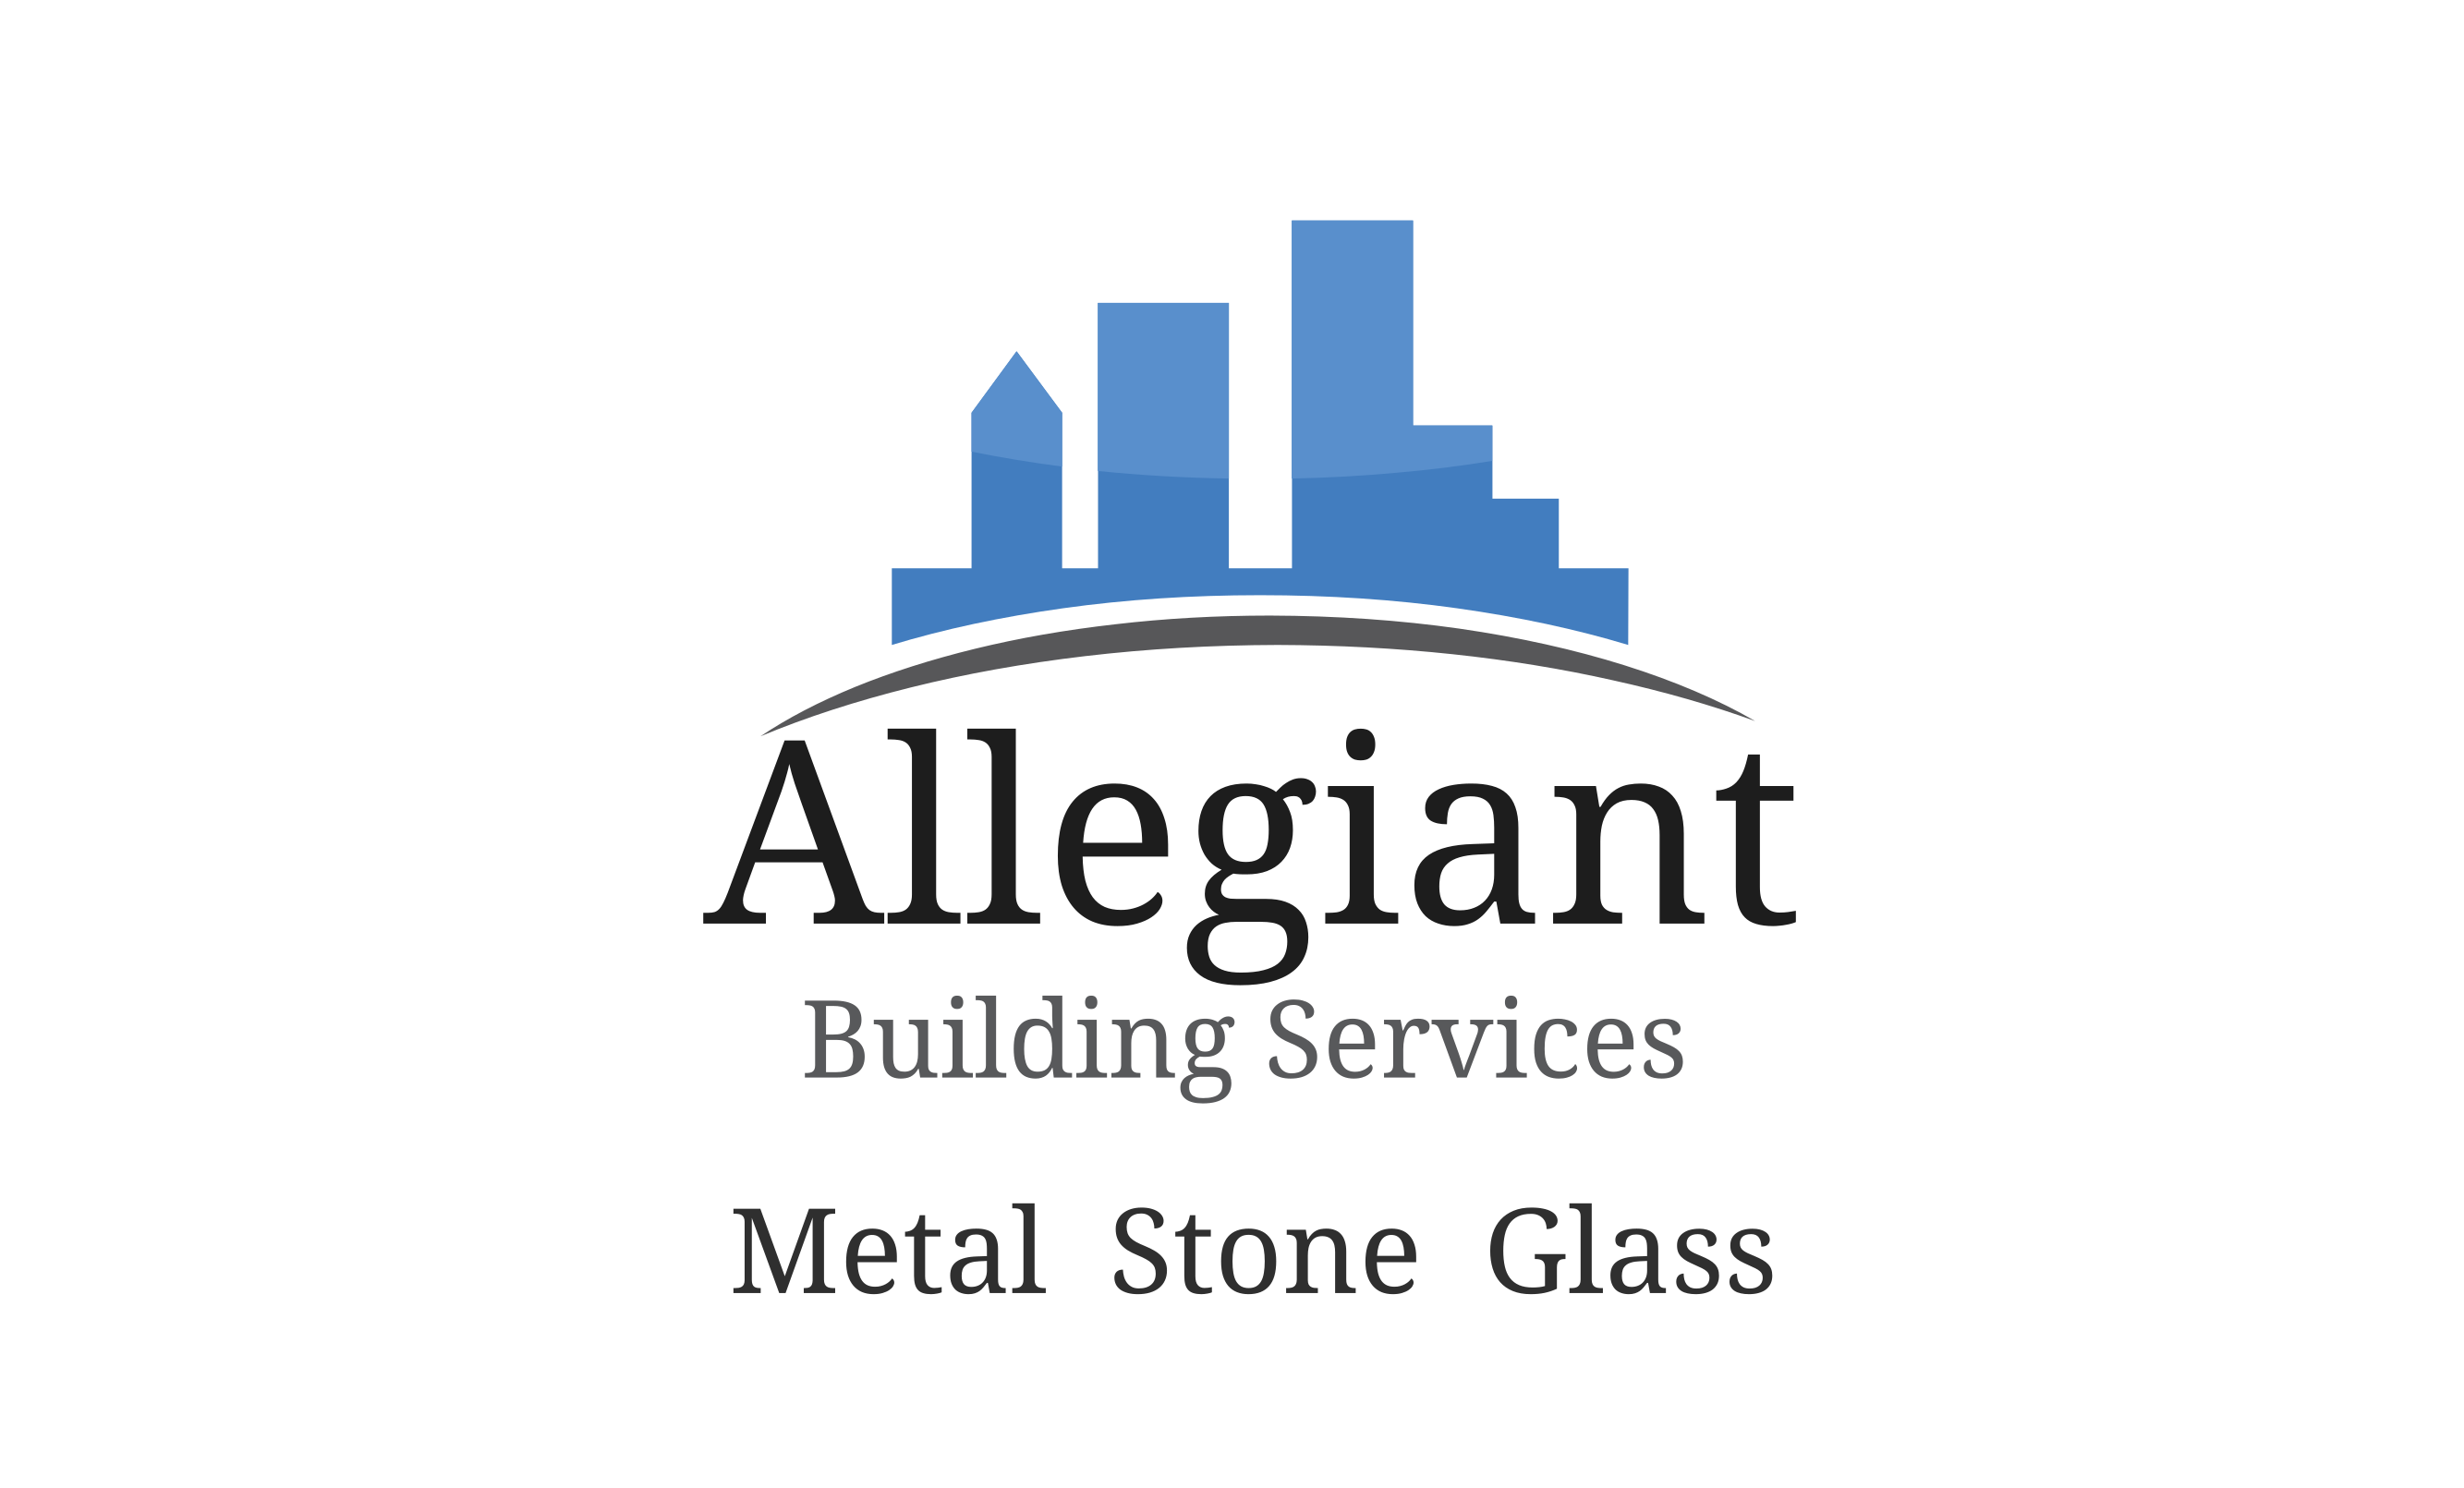 Allegiant Building Services Inc.